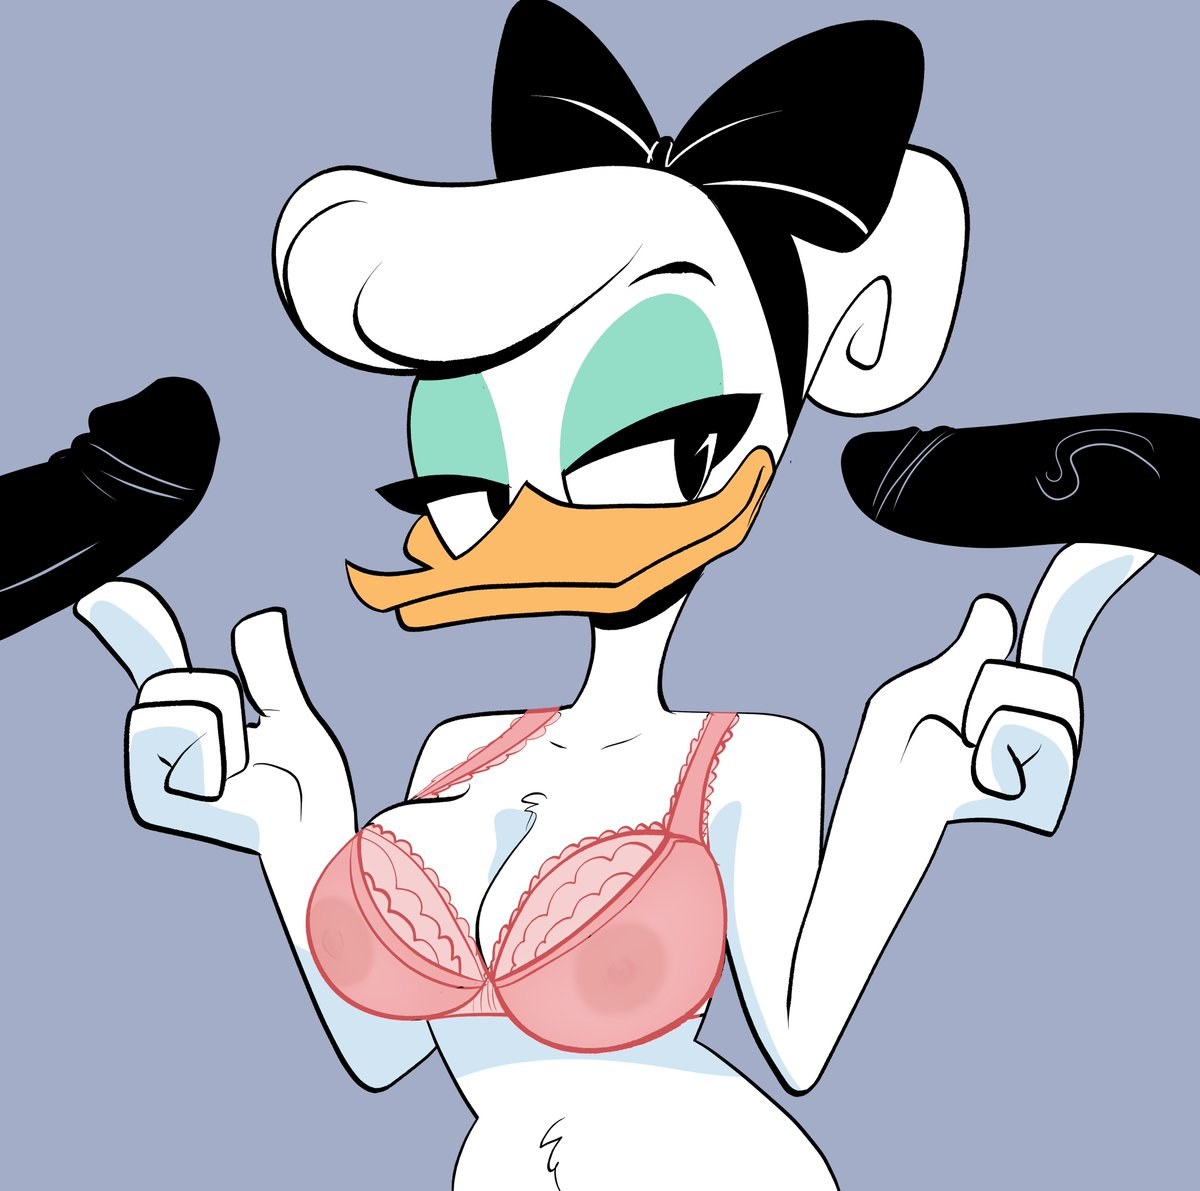 Daisy duck naked